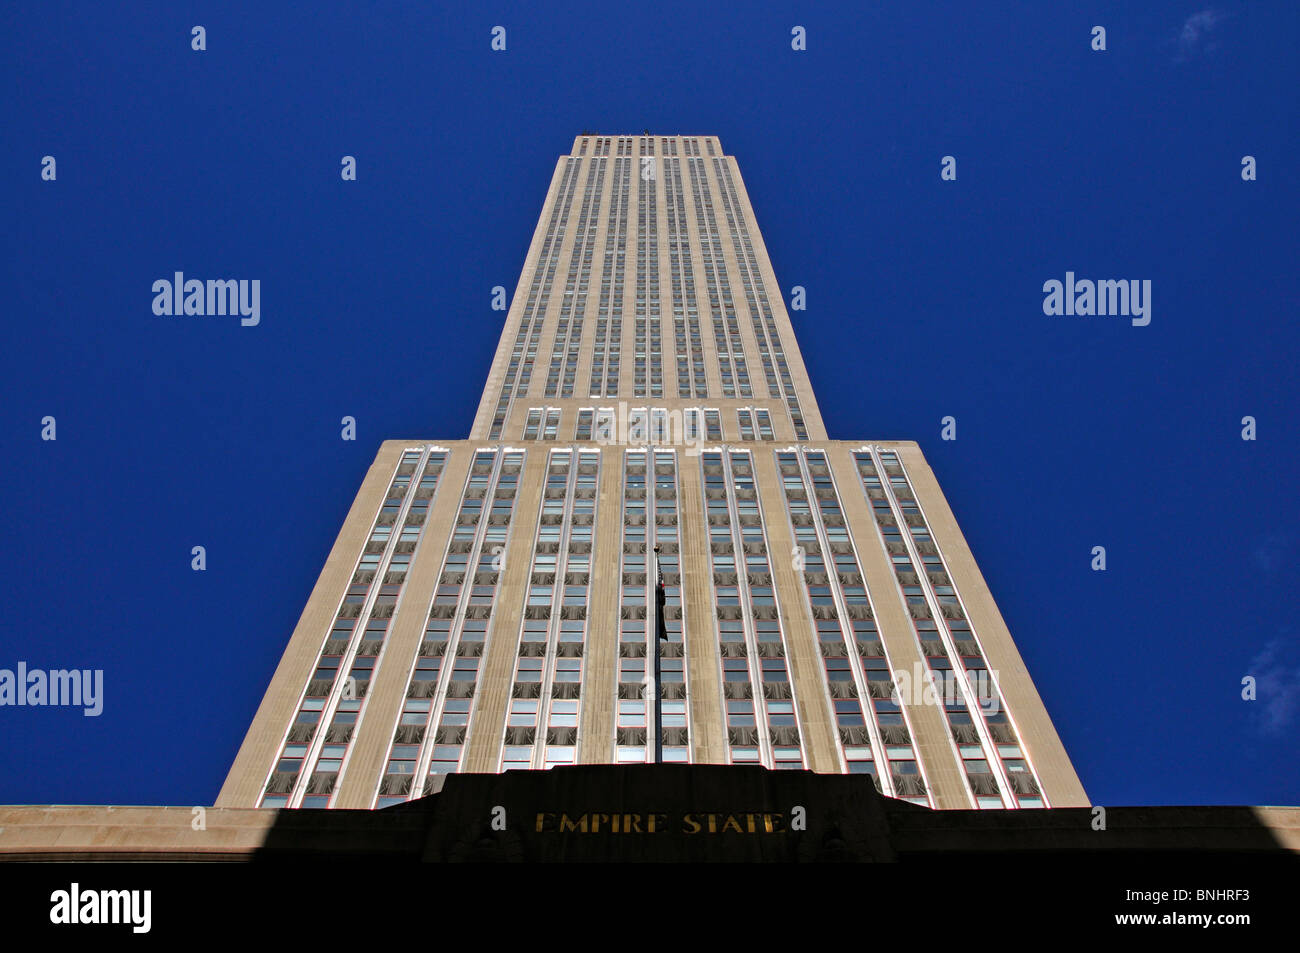 Empire State Building Manhattan New York City USA High-rise building New York Skyscraper Blue sky Facade Stock Photo